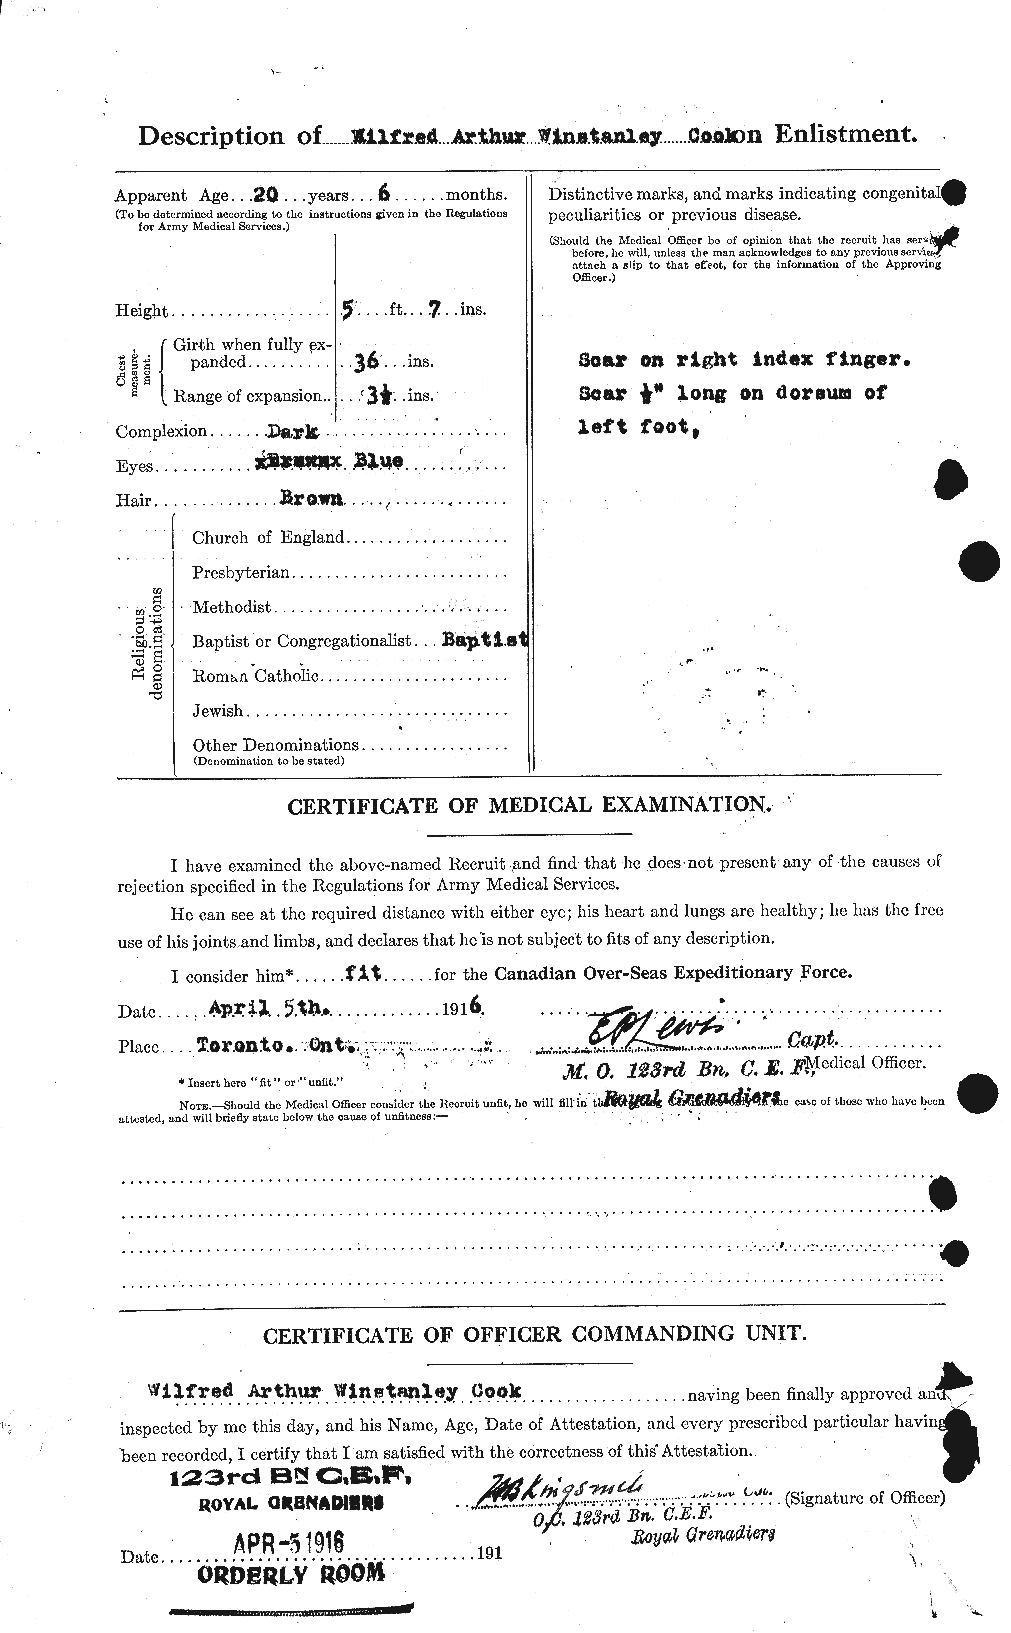 Dossiers du Personnel de la Première Guerre mondiale - CEC 074735b